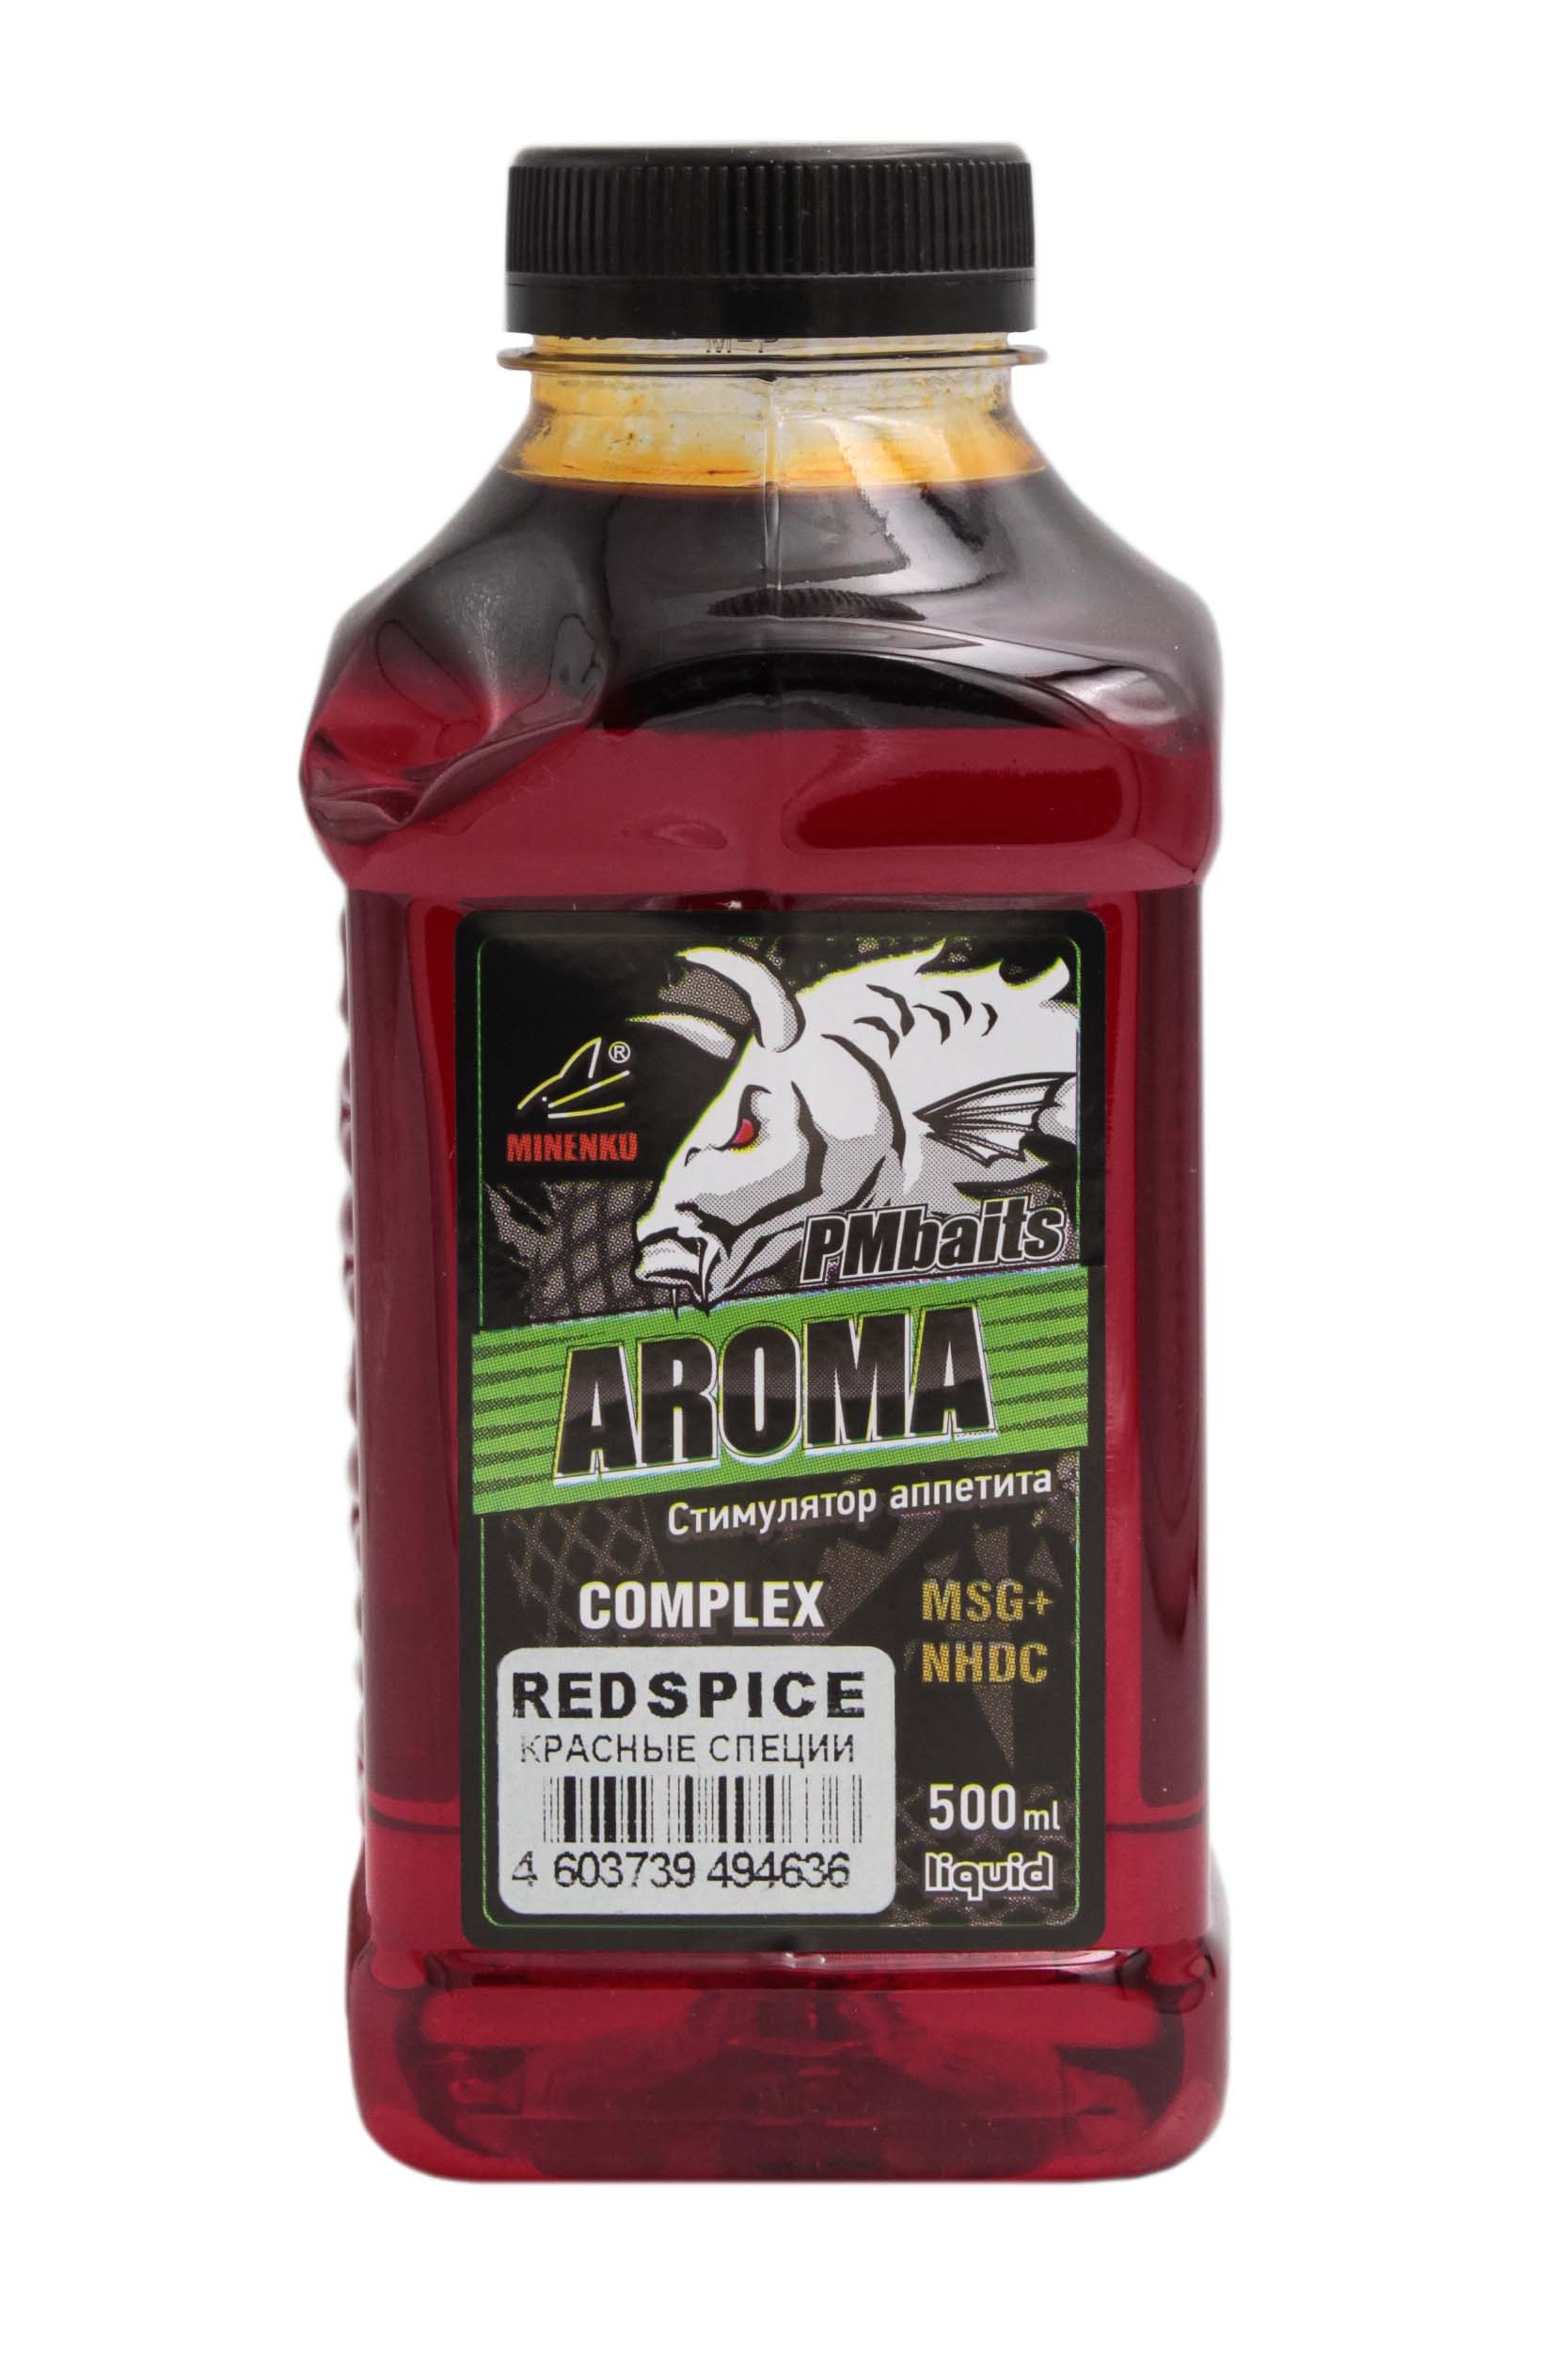 Ликвид MINENKO PMbaits Aroma 0,5л Red spice красные специи - фото 1